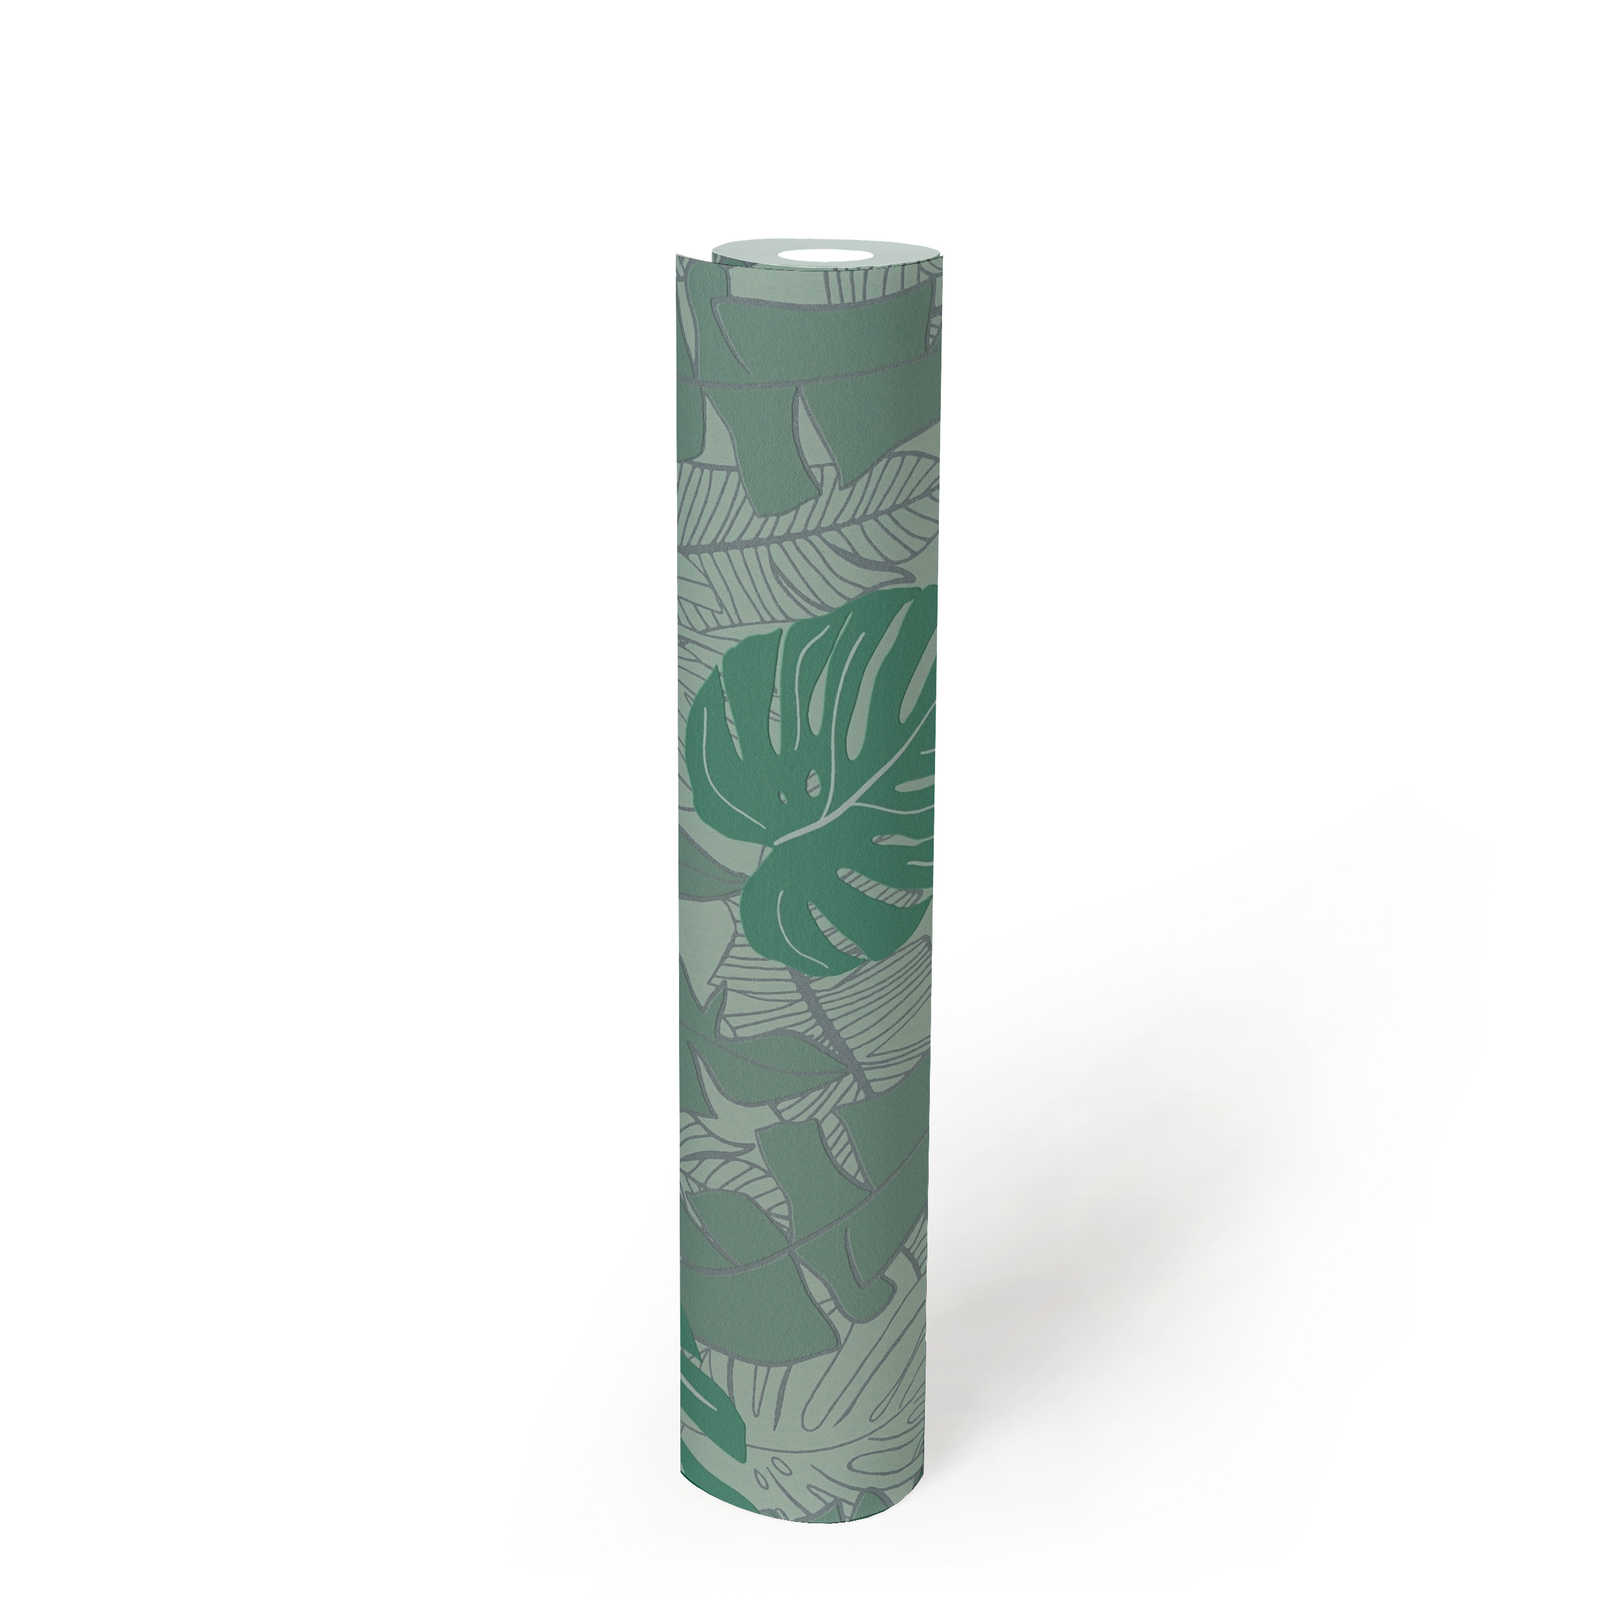             Dschungeltapete mit glänzendem Muster – Grün, Metallic
        